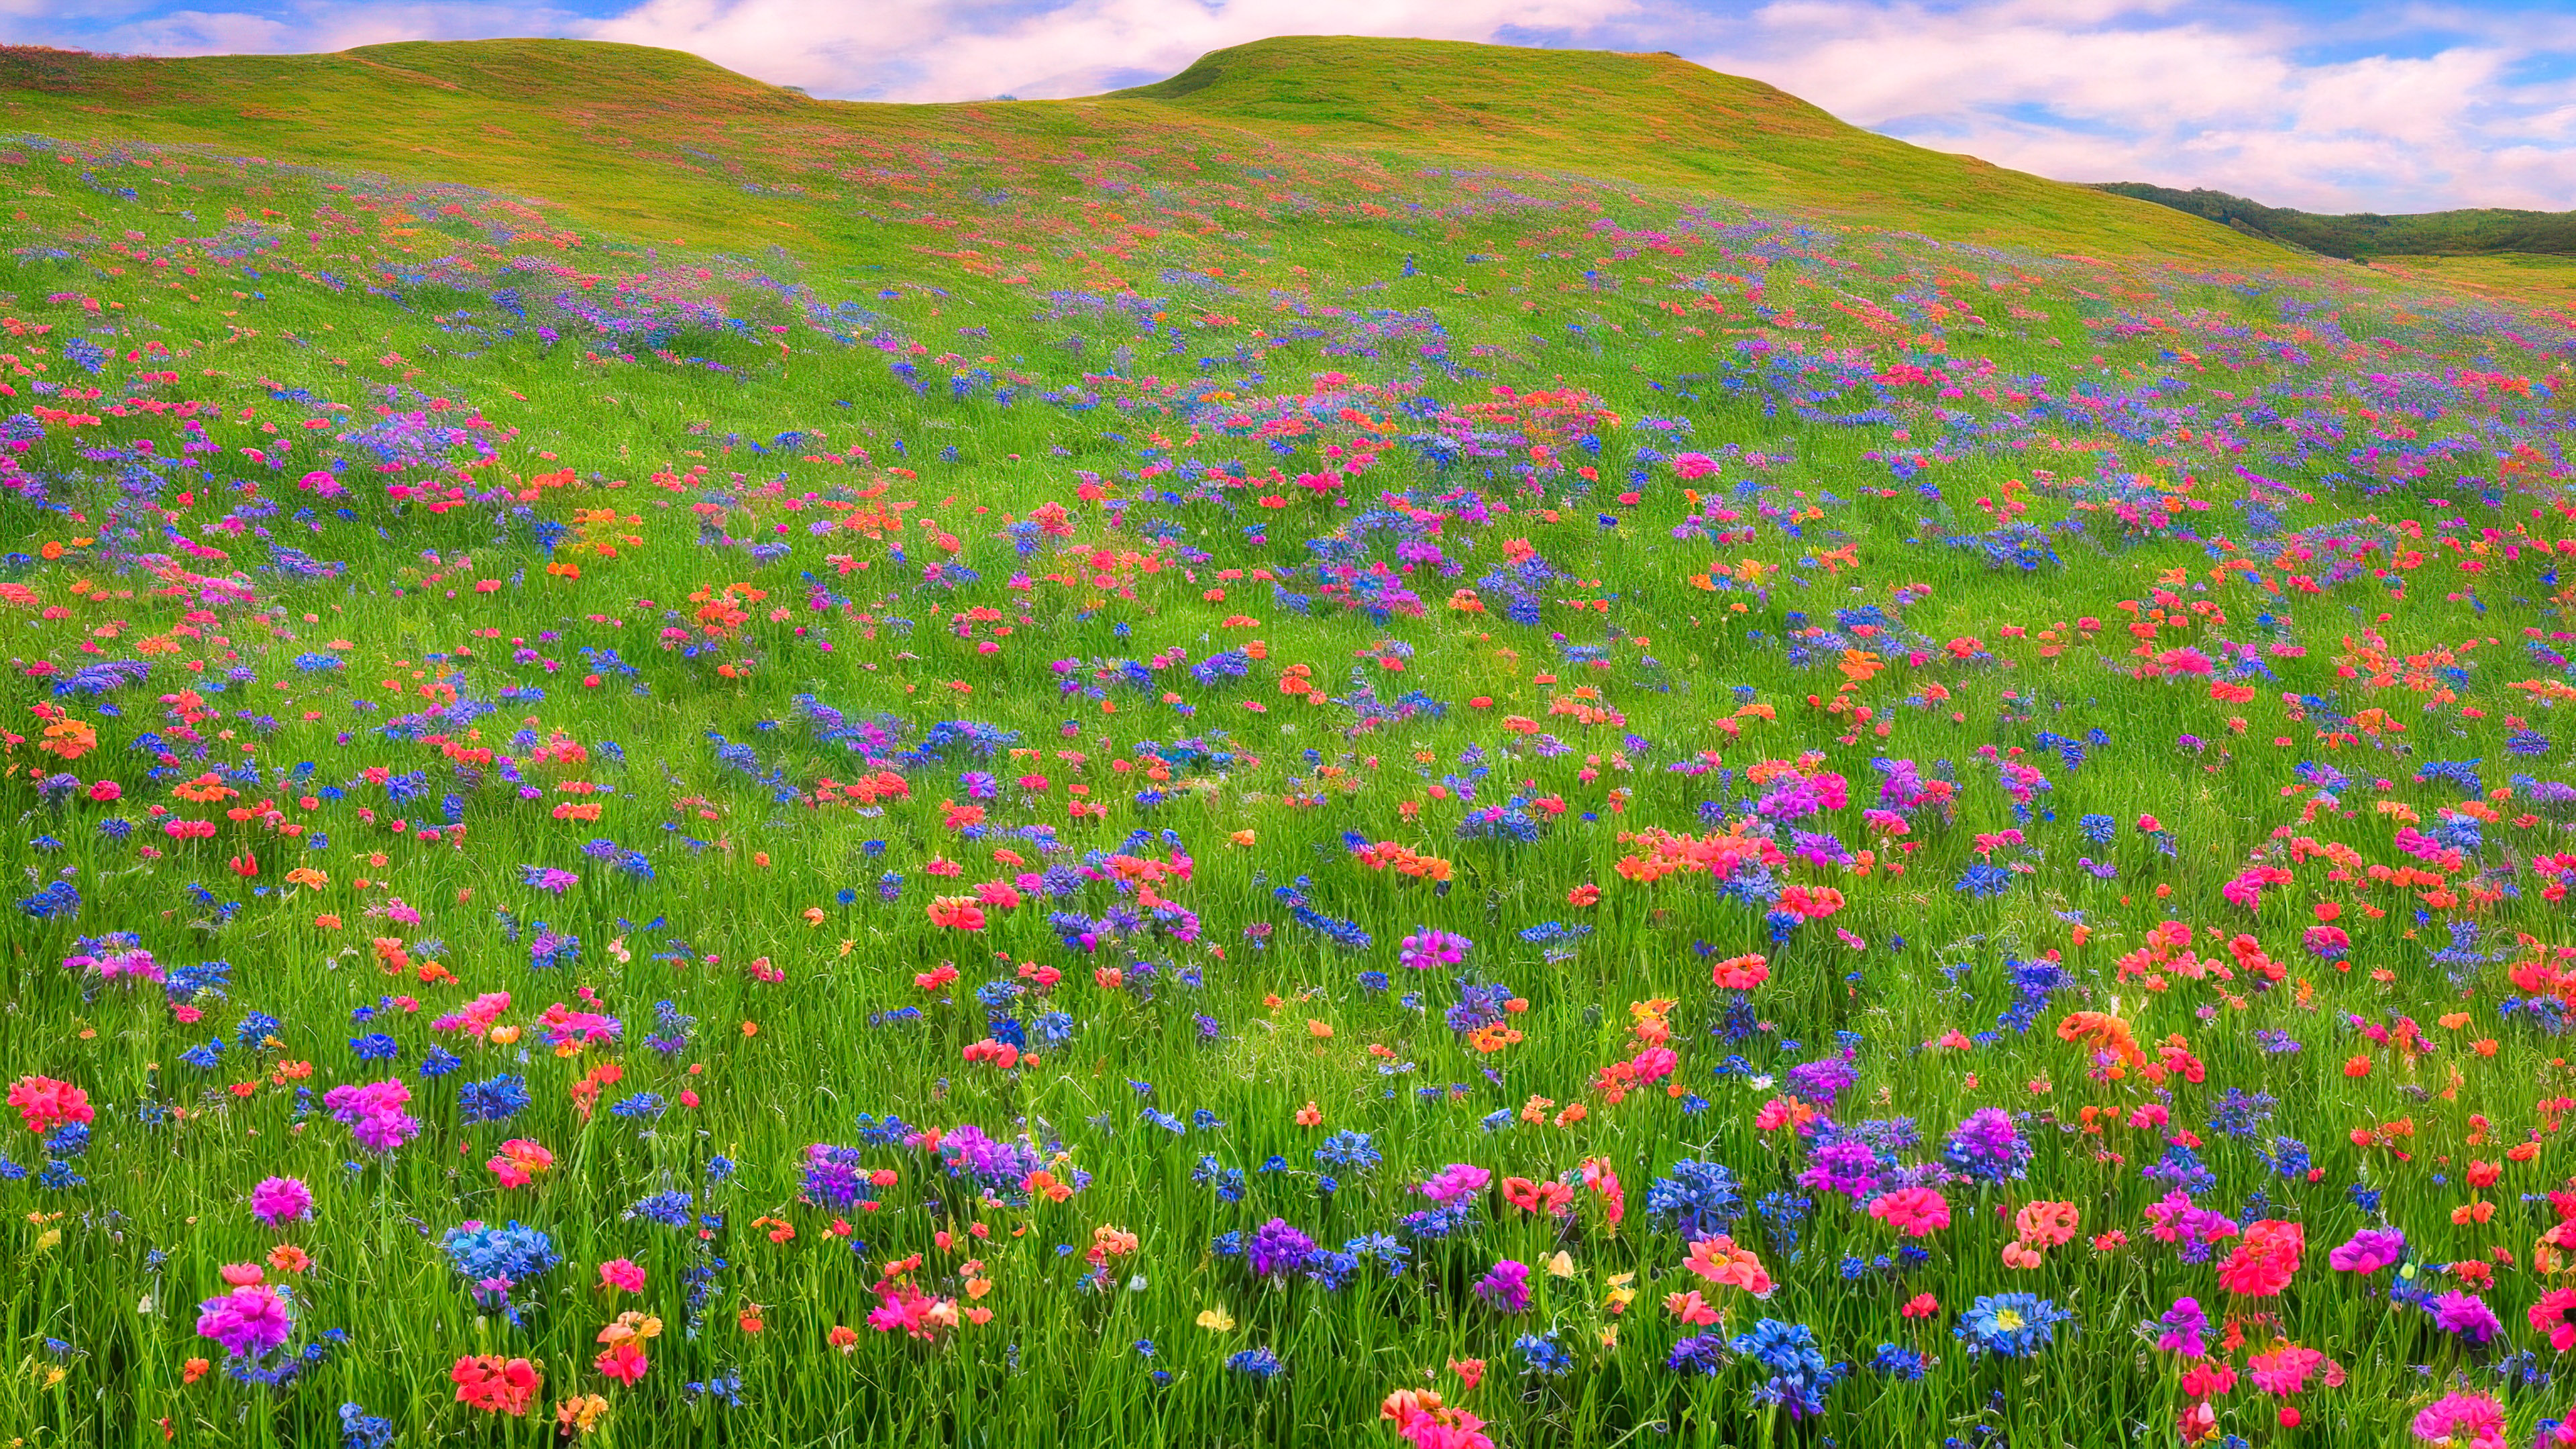 Obtenez un aperçu de la campagne avec notre fond d'écran de paysage, présentant une prairie pittoresque couverte de fleurs sauvages colorées, avec en toile de fond des collines ondulantes.